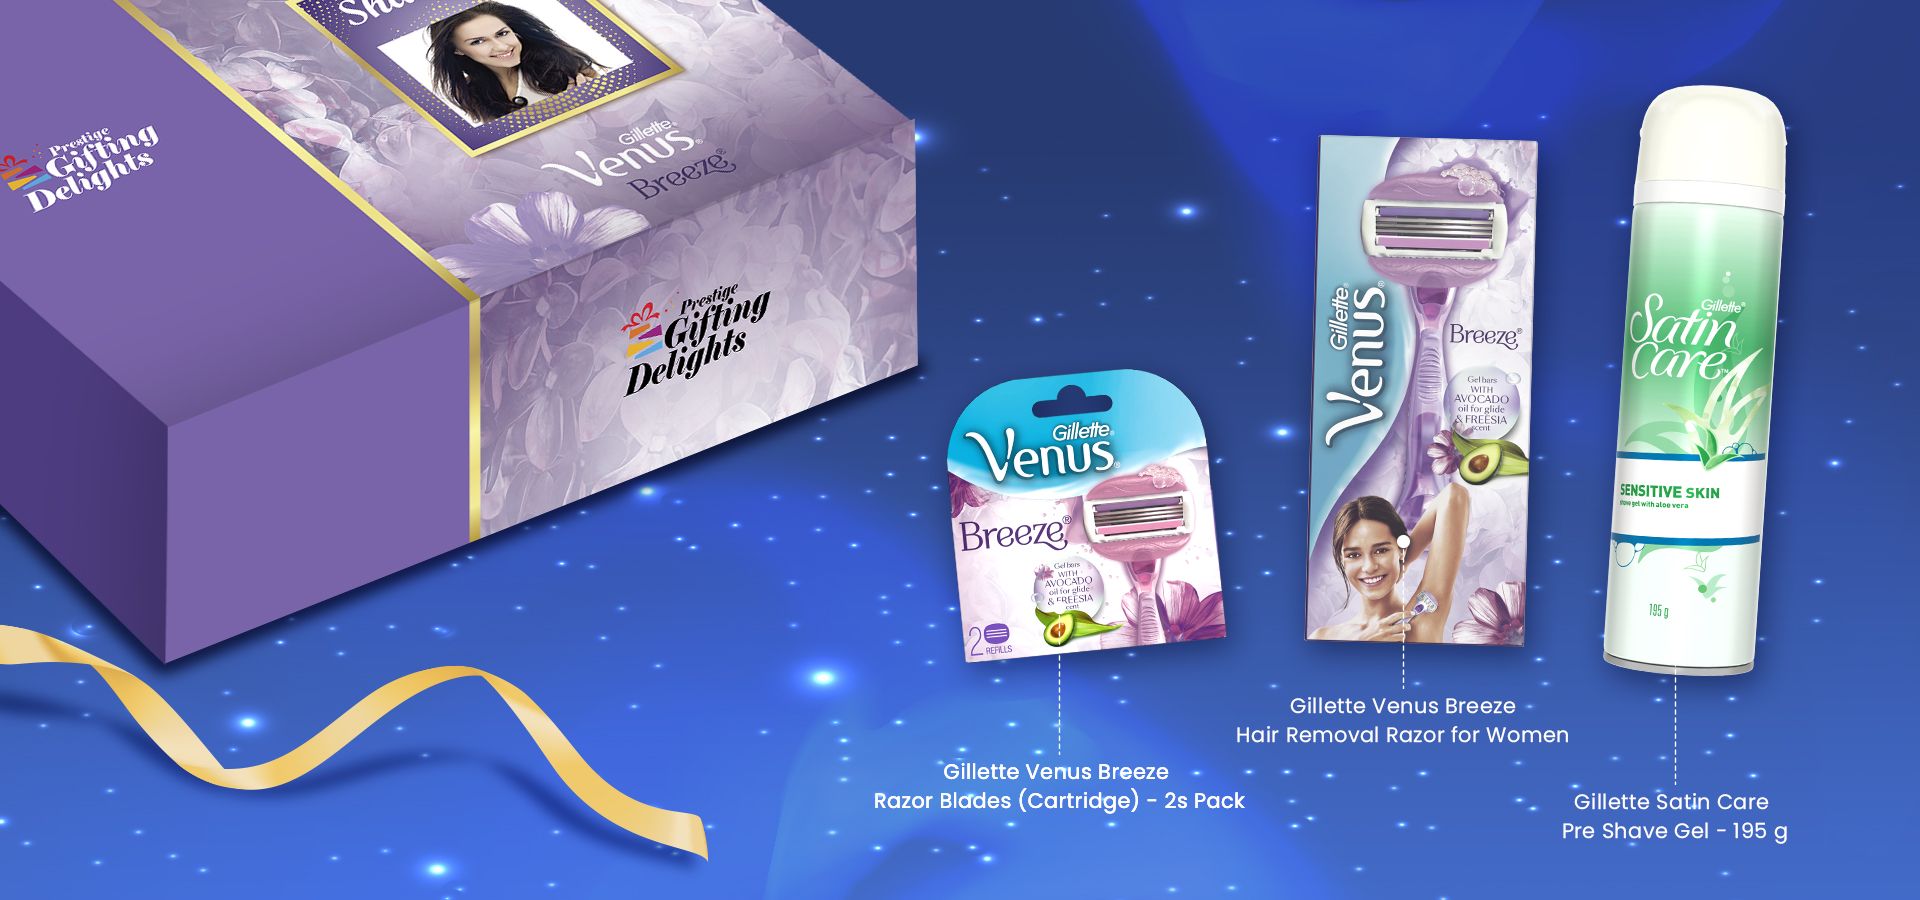 Gillette Venus Breeze Razor Shaving Anniversary Gift Pack for Women